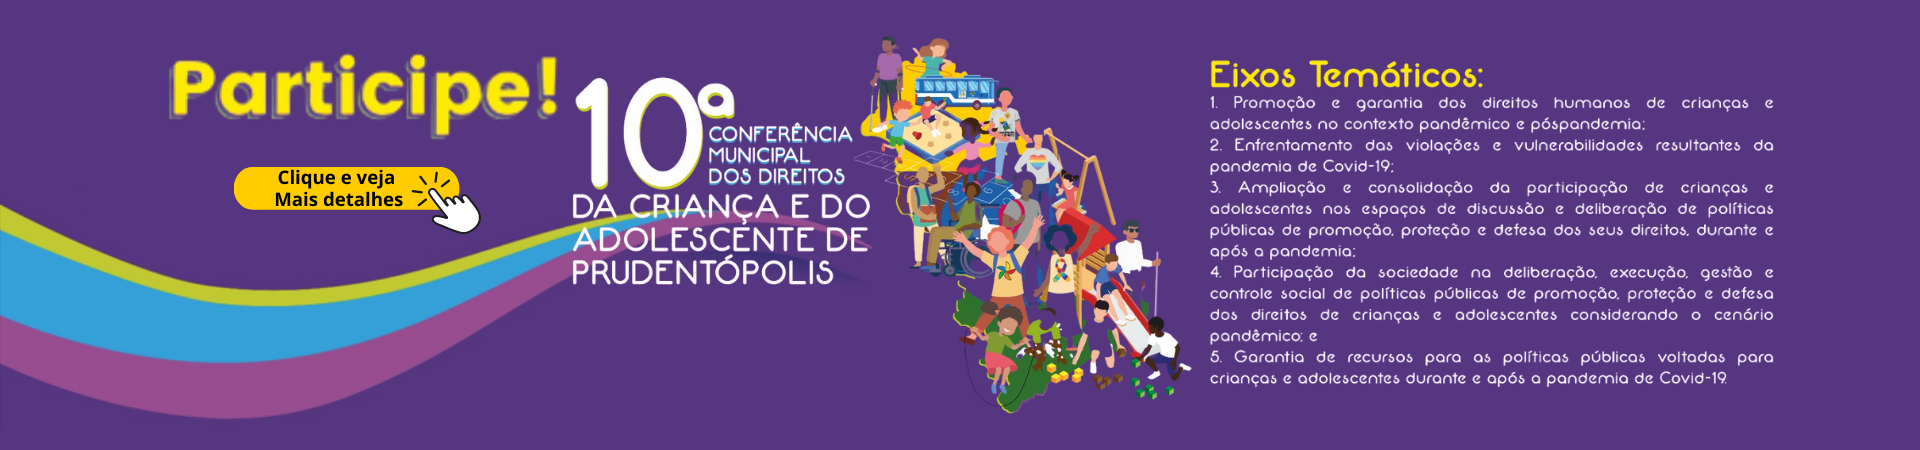 Conferência Municipal da Criança e do Adolescente de Prudenópolis